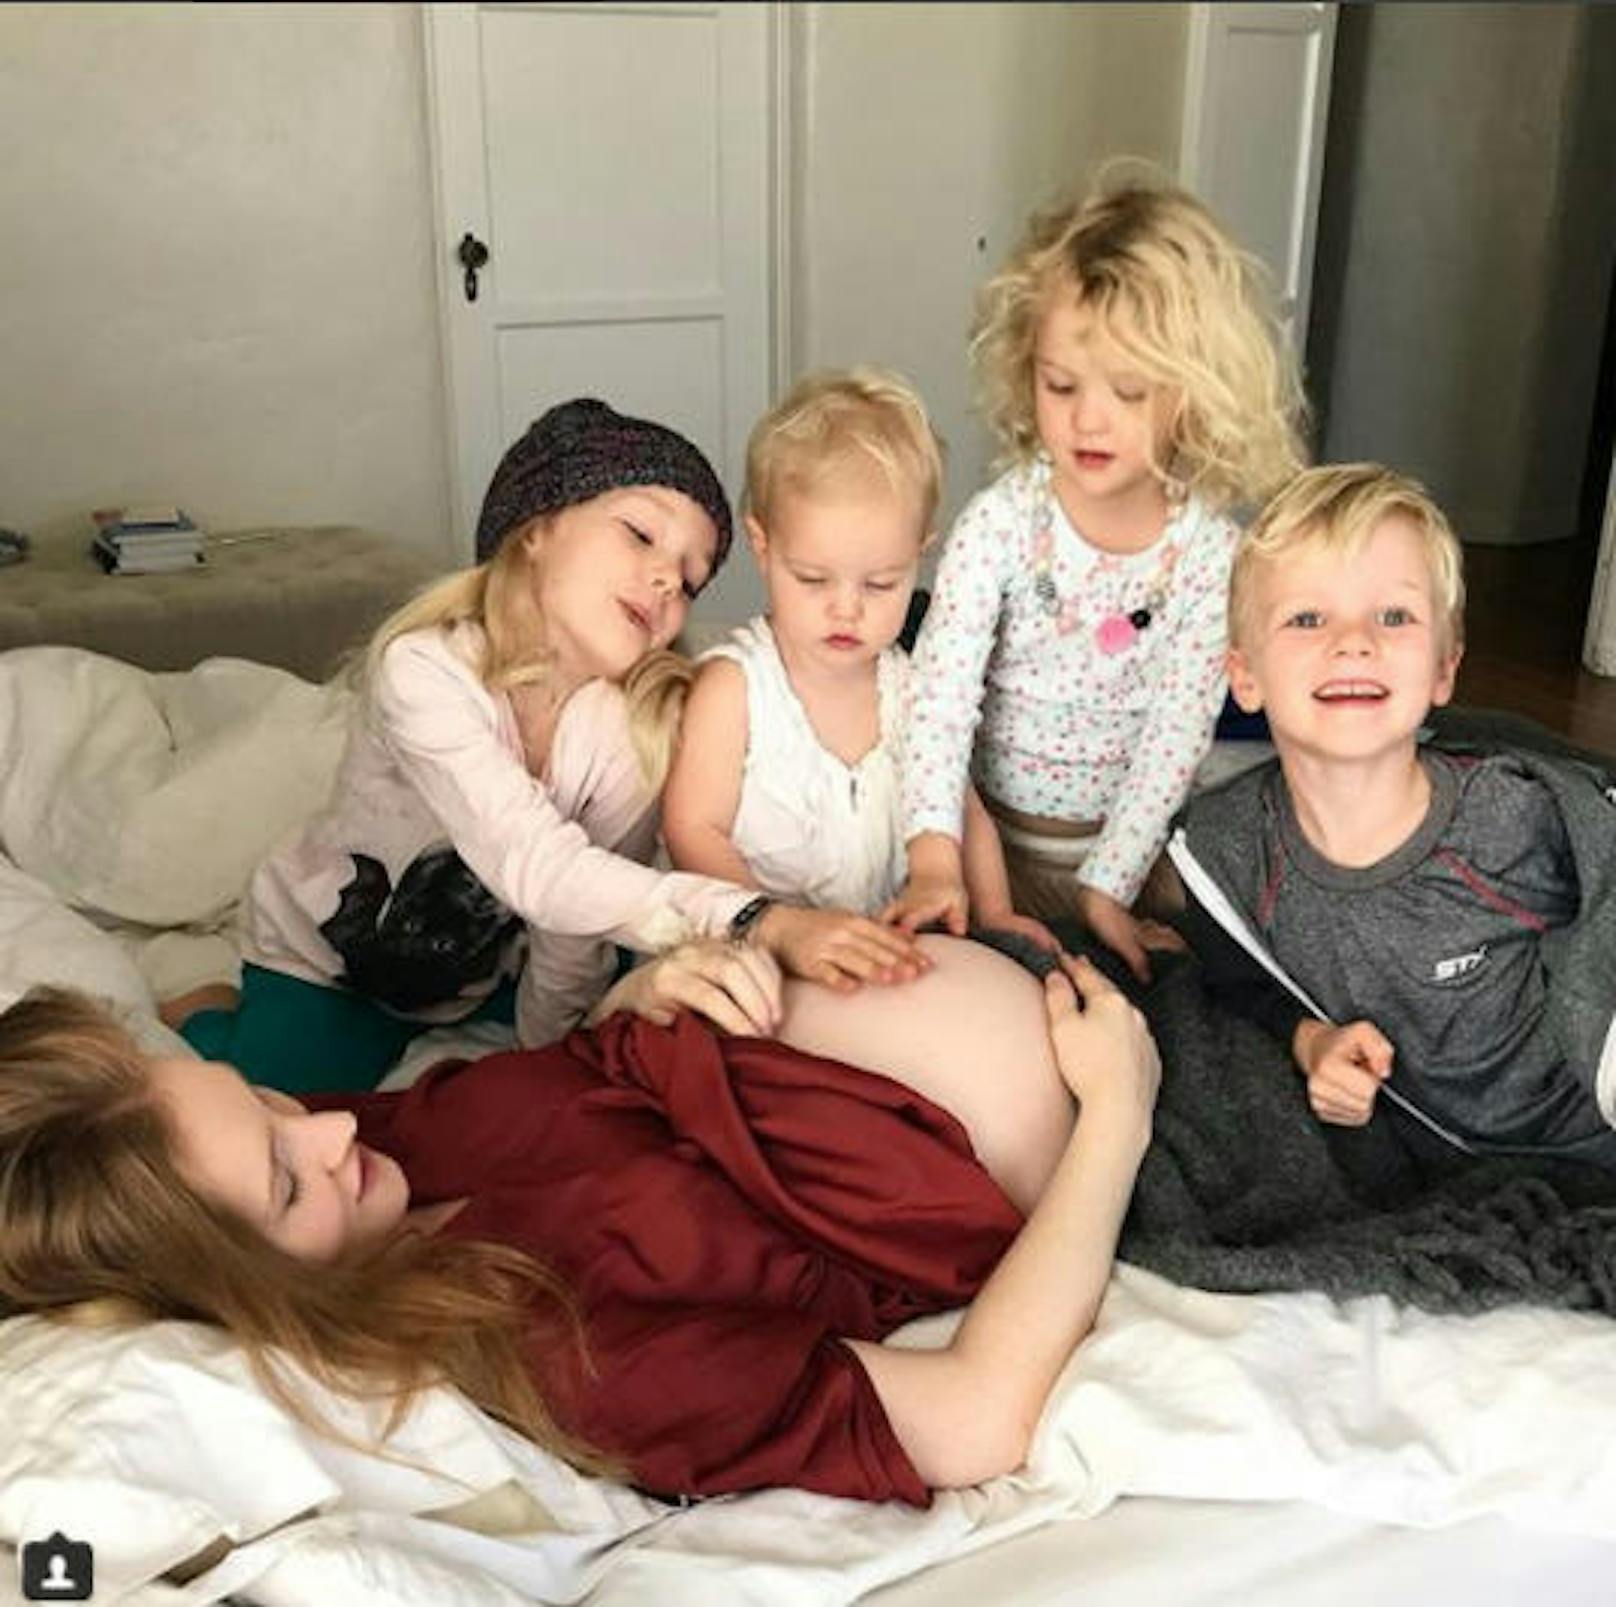 25.02.2018: James Van der Beek bekommt sein 5. Kind mit Kimberley Brook.